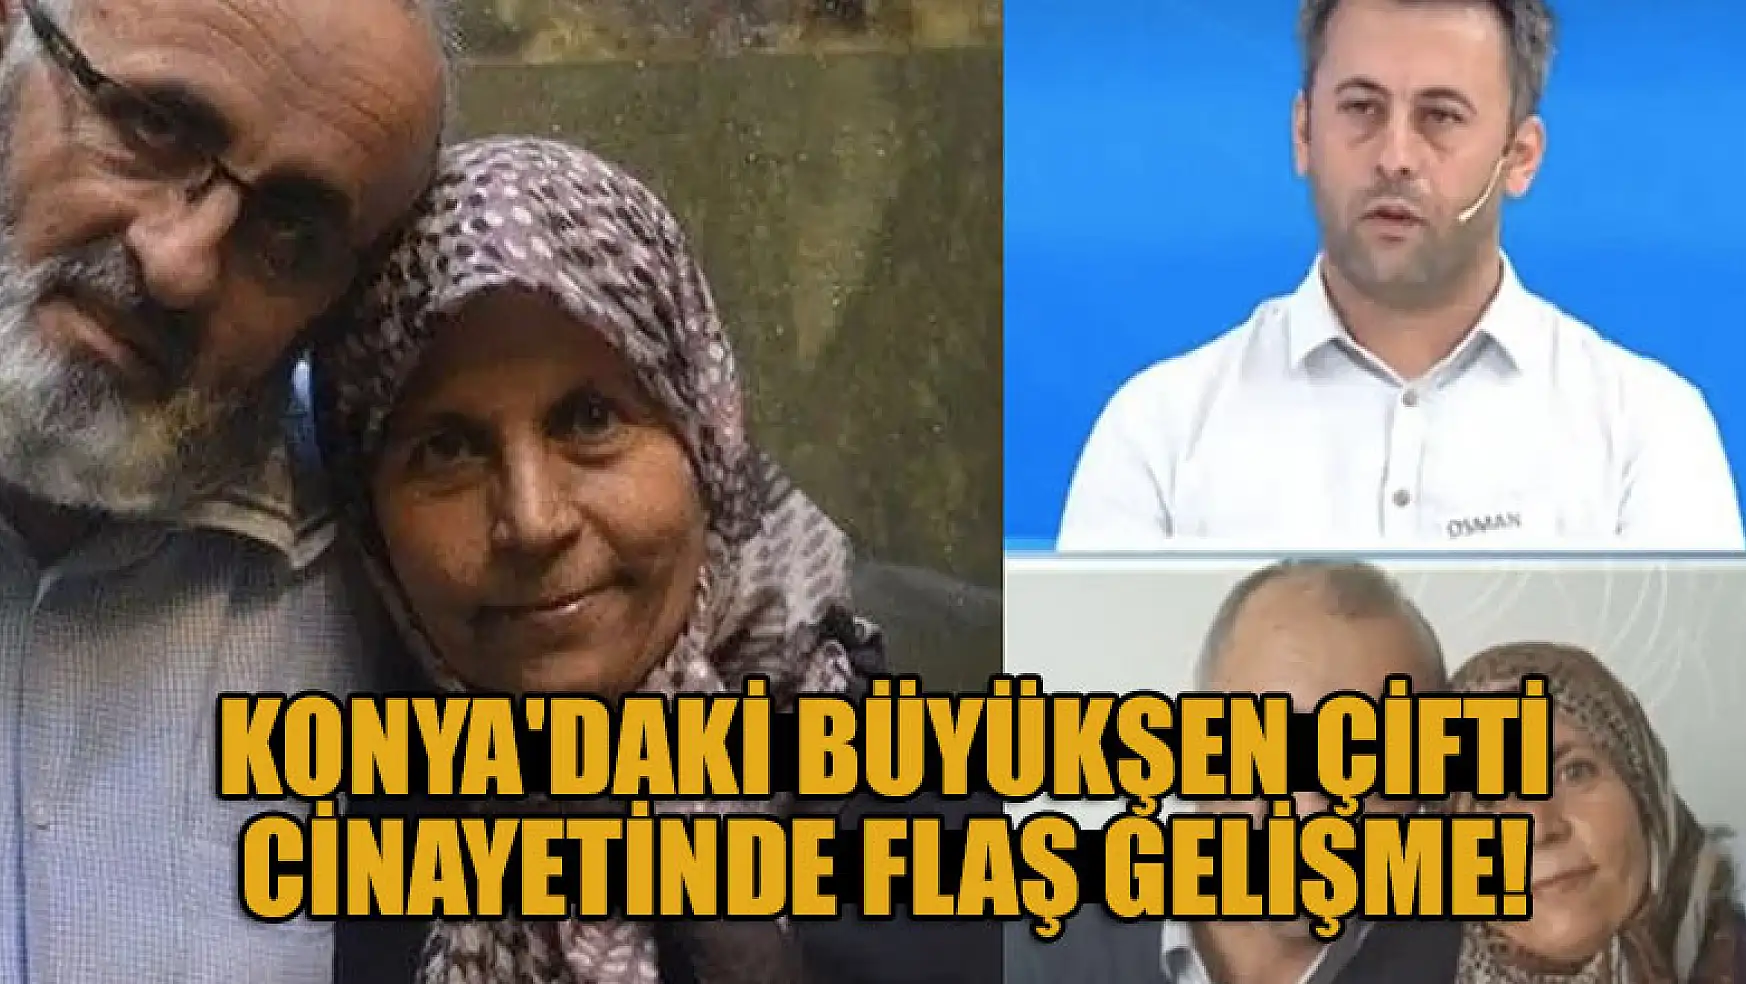 Konya'daki Büyükşen çifti cinayetinde flaş gelişme! 5 gözaltı